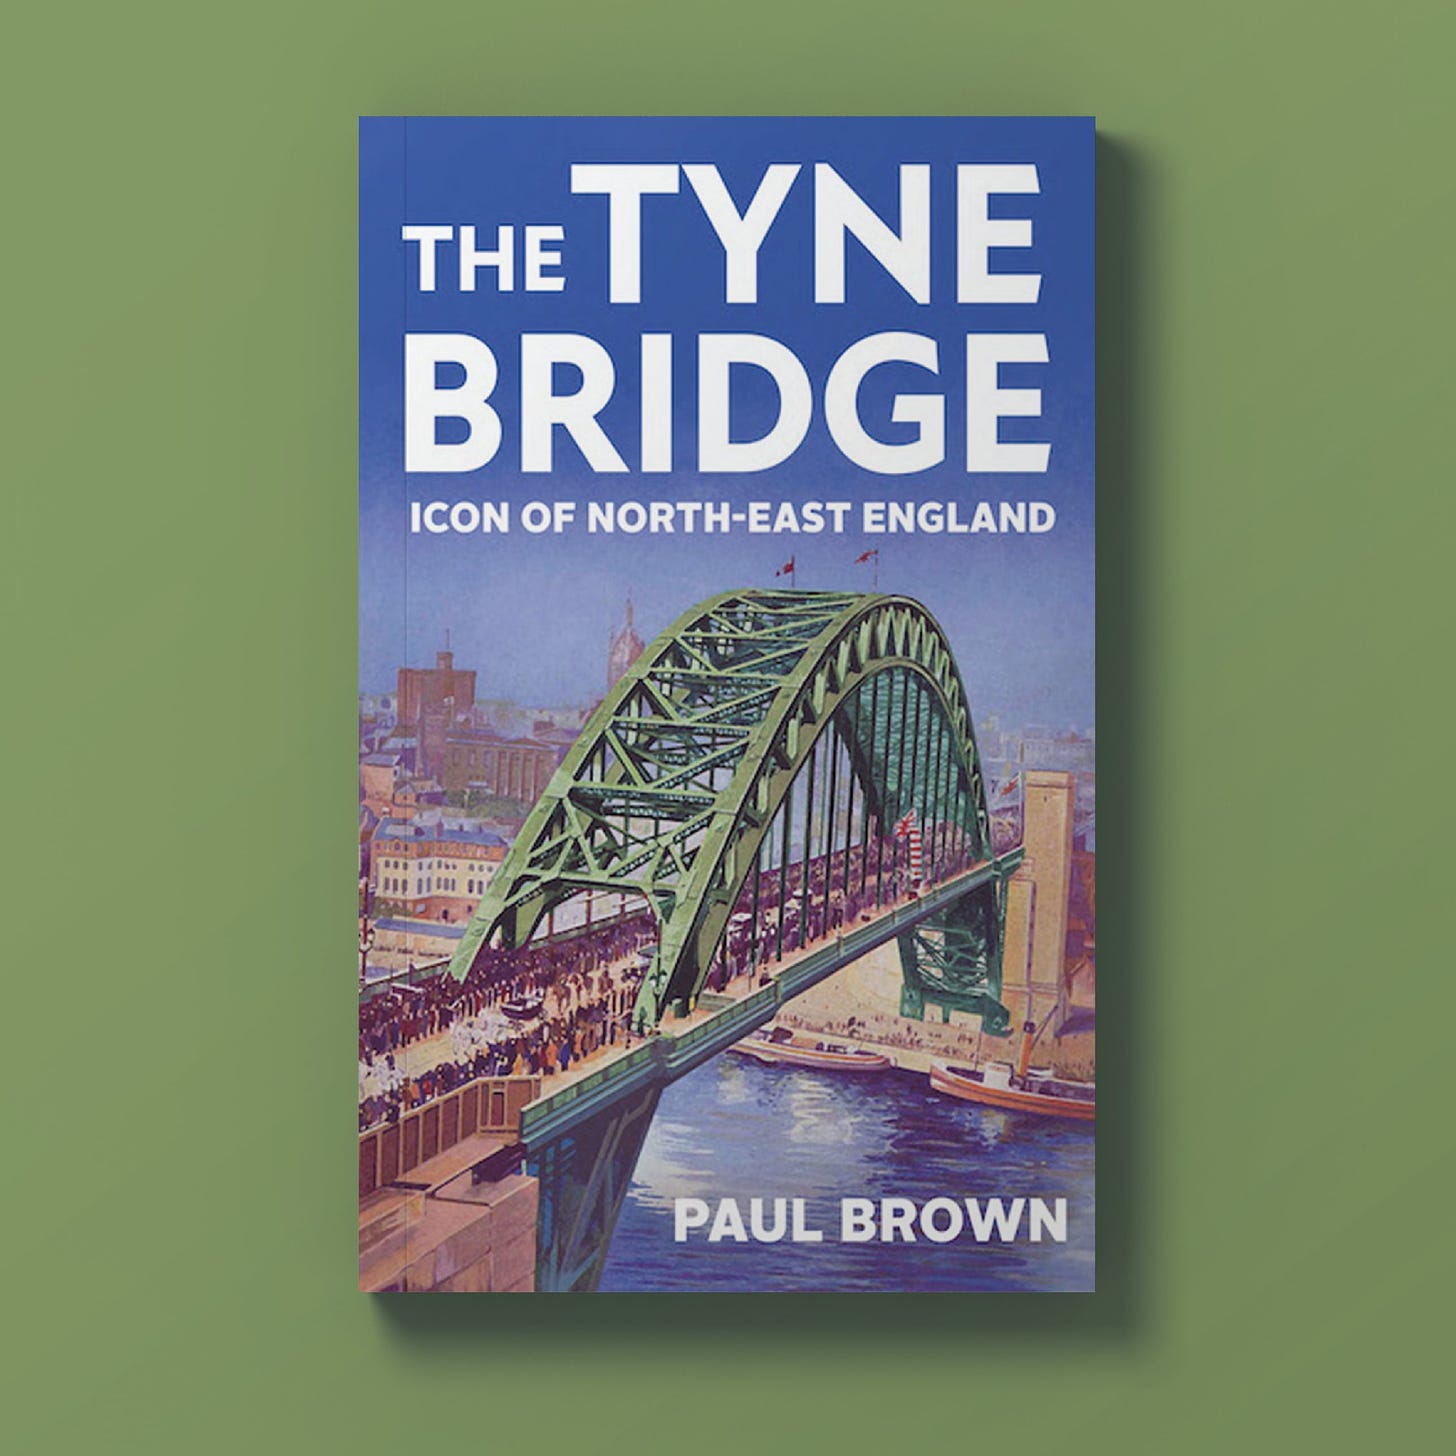 The Tyne Bridge paperback book by Paul Brown